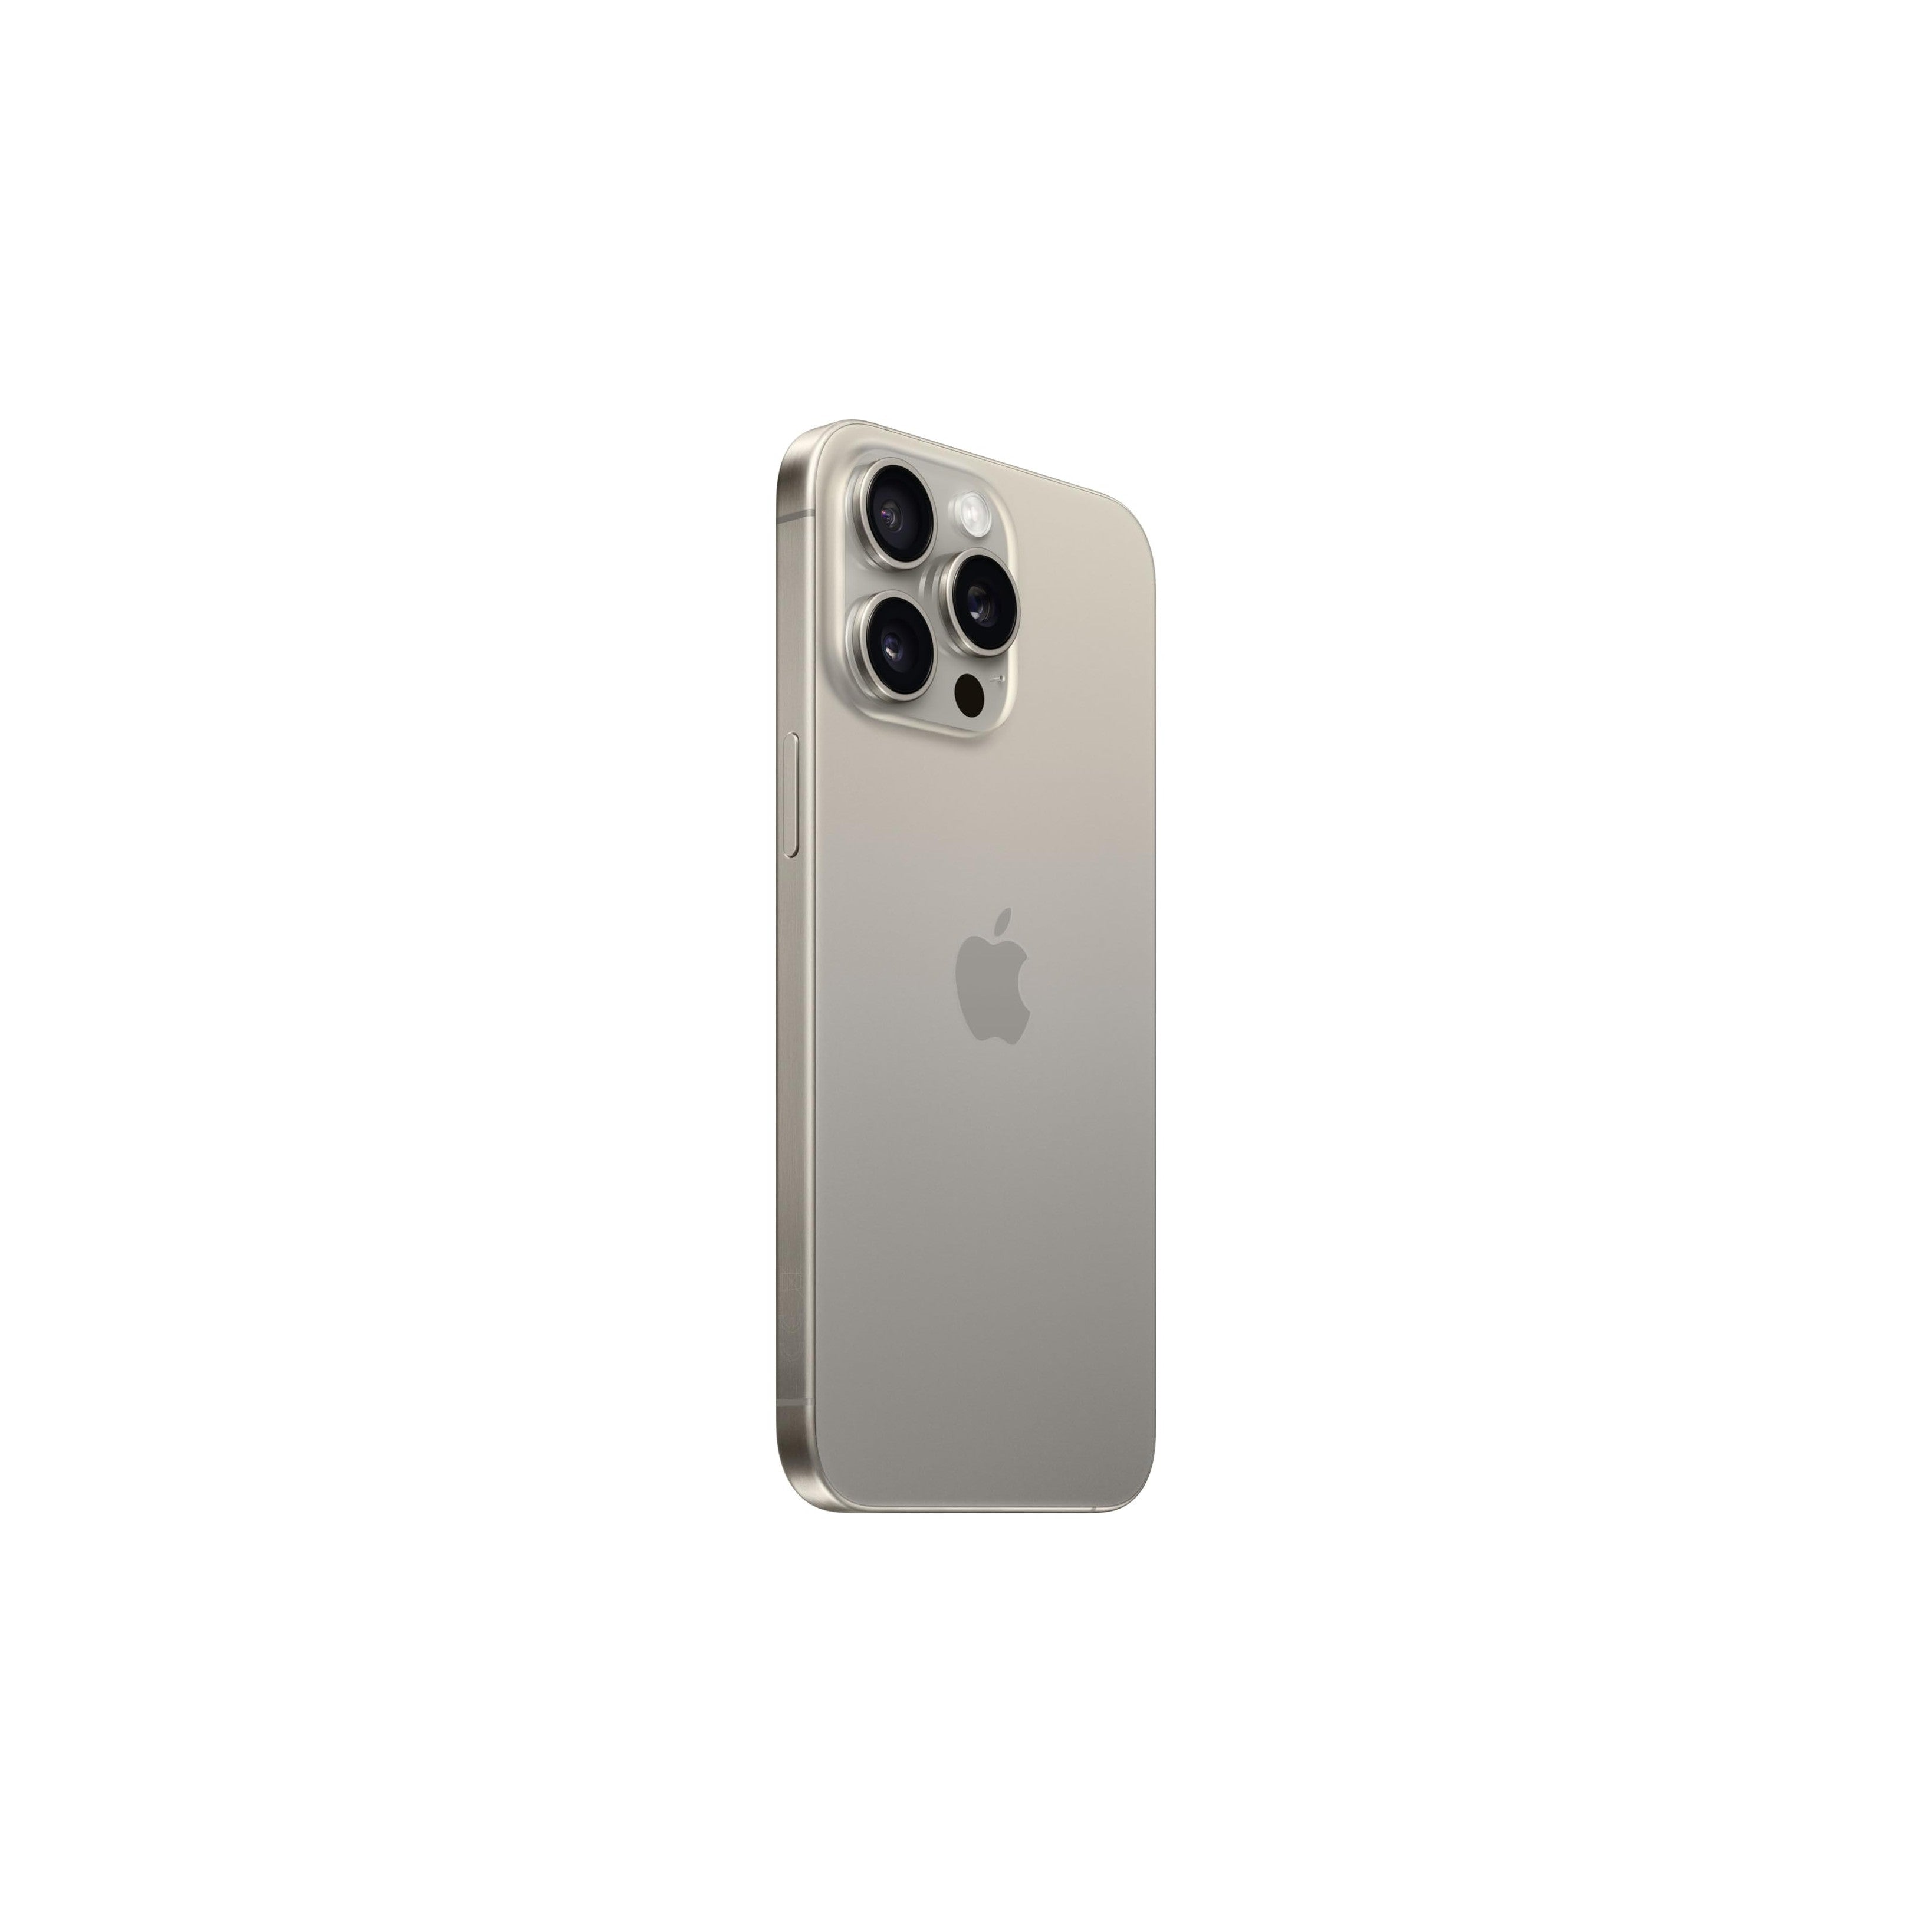 Apple iPhone 15 Pro Max (256 GB) - Titanio naturale-iStoreMilano